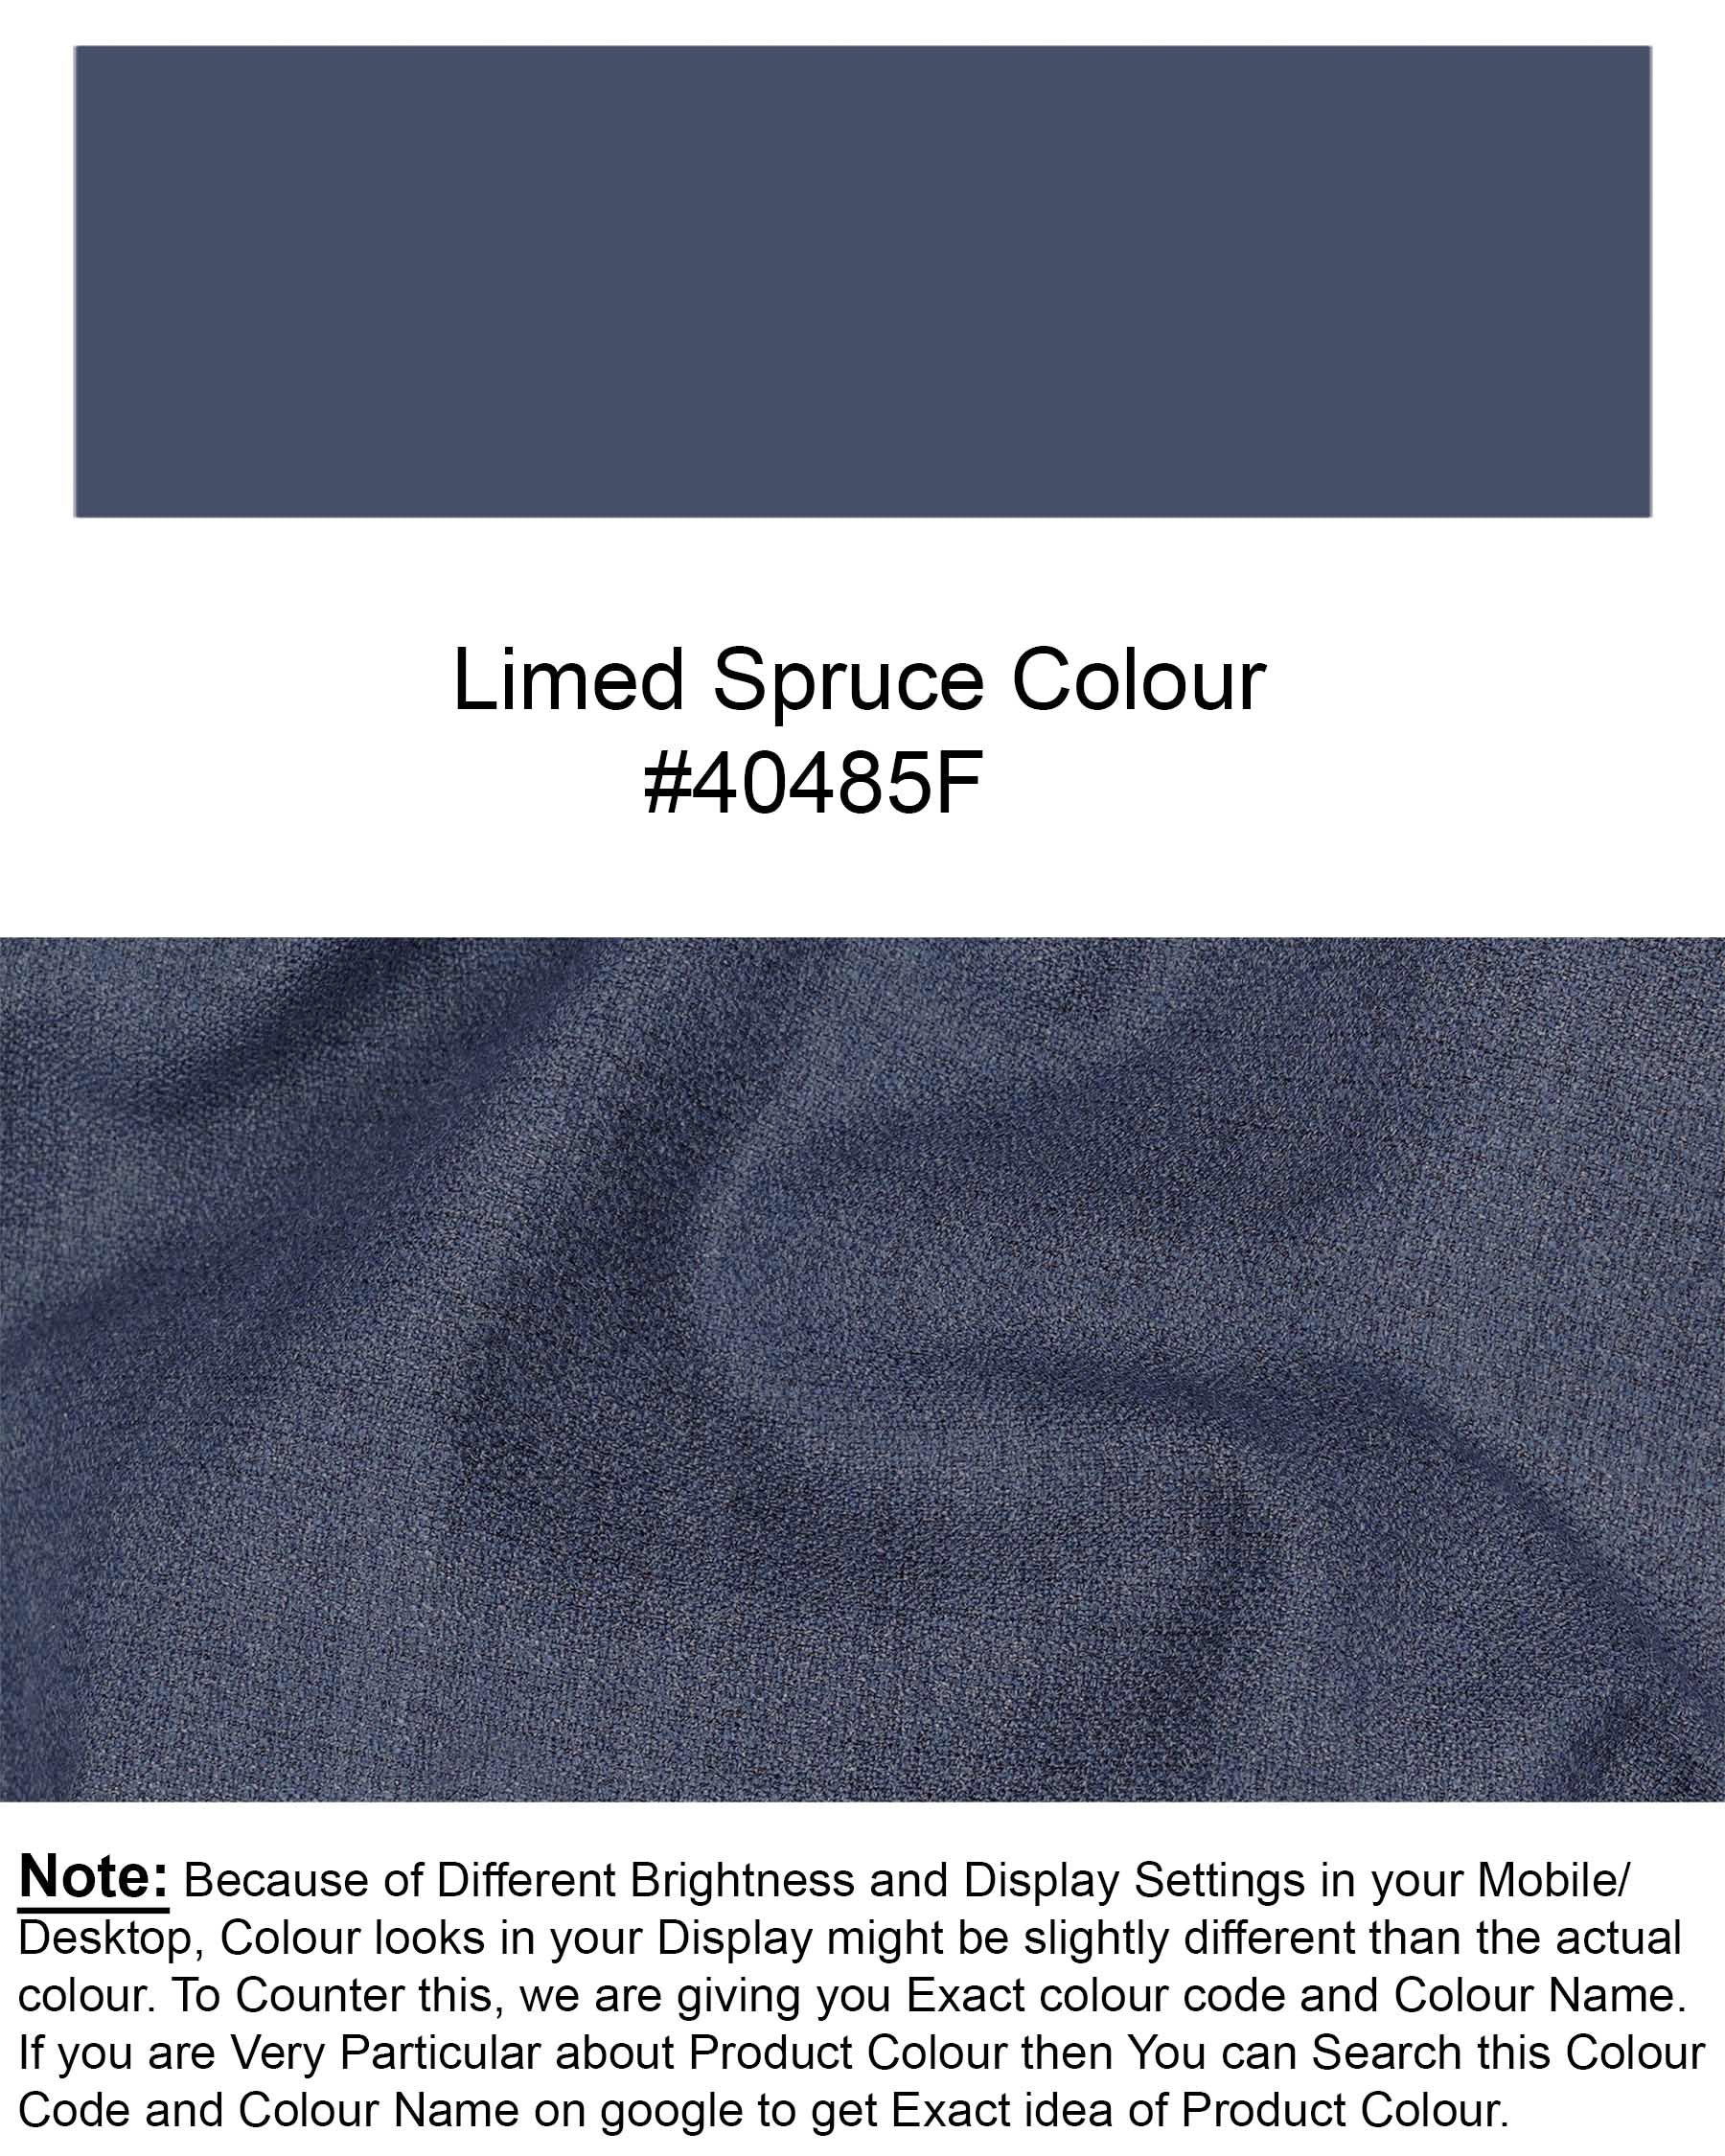 Limed Spruce Blue Plaid Waistcoat V1930-36, V1930-38, V1930-40, V1930-42, V1930-44, V1930-46, V1930-48, V1930-50, V1930-52, V1930-54, V1930-56, V1930-58, V1930-60